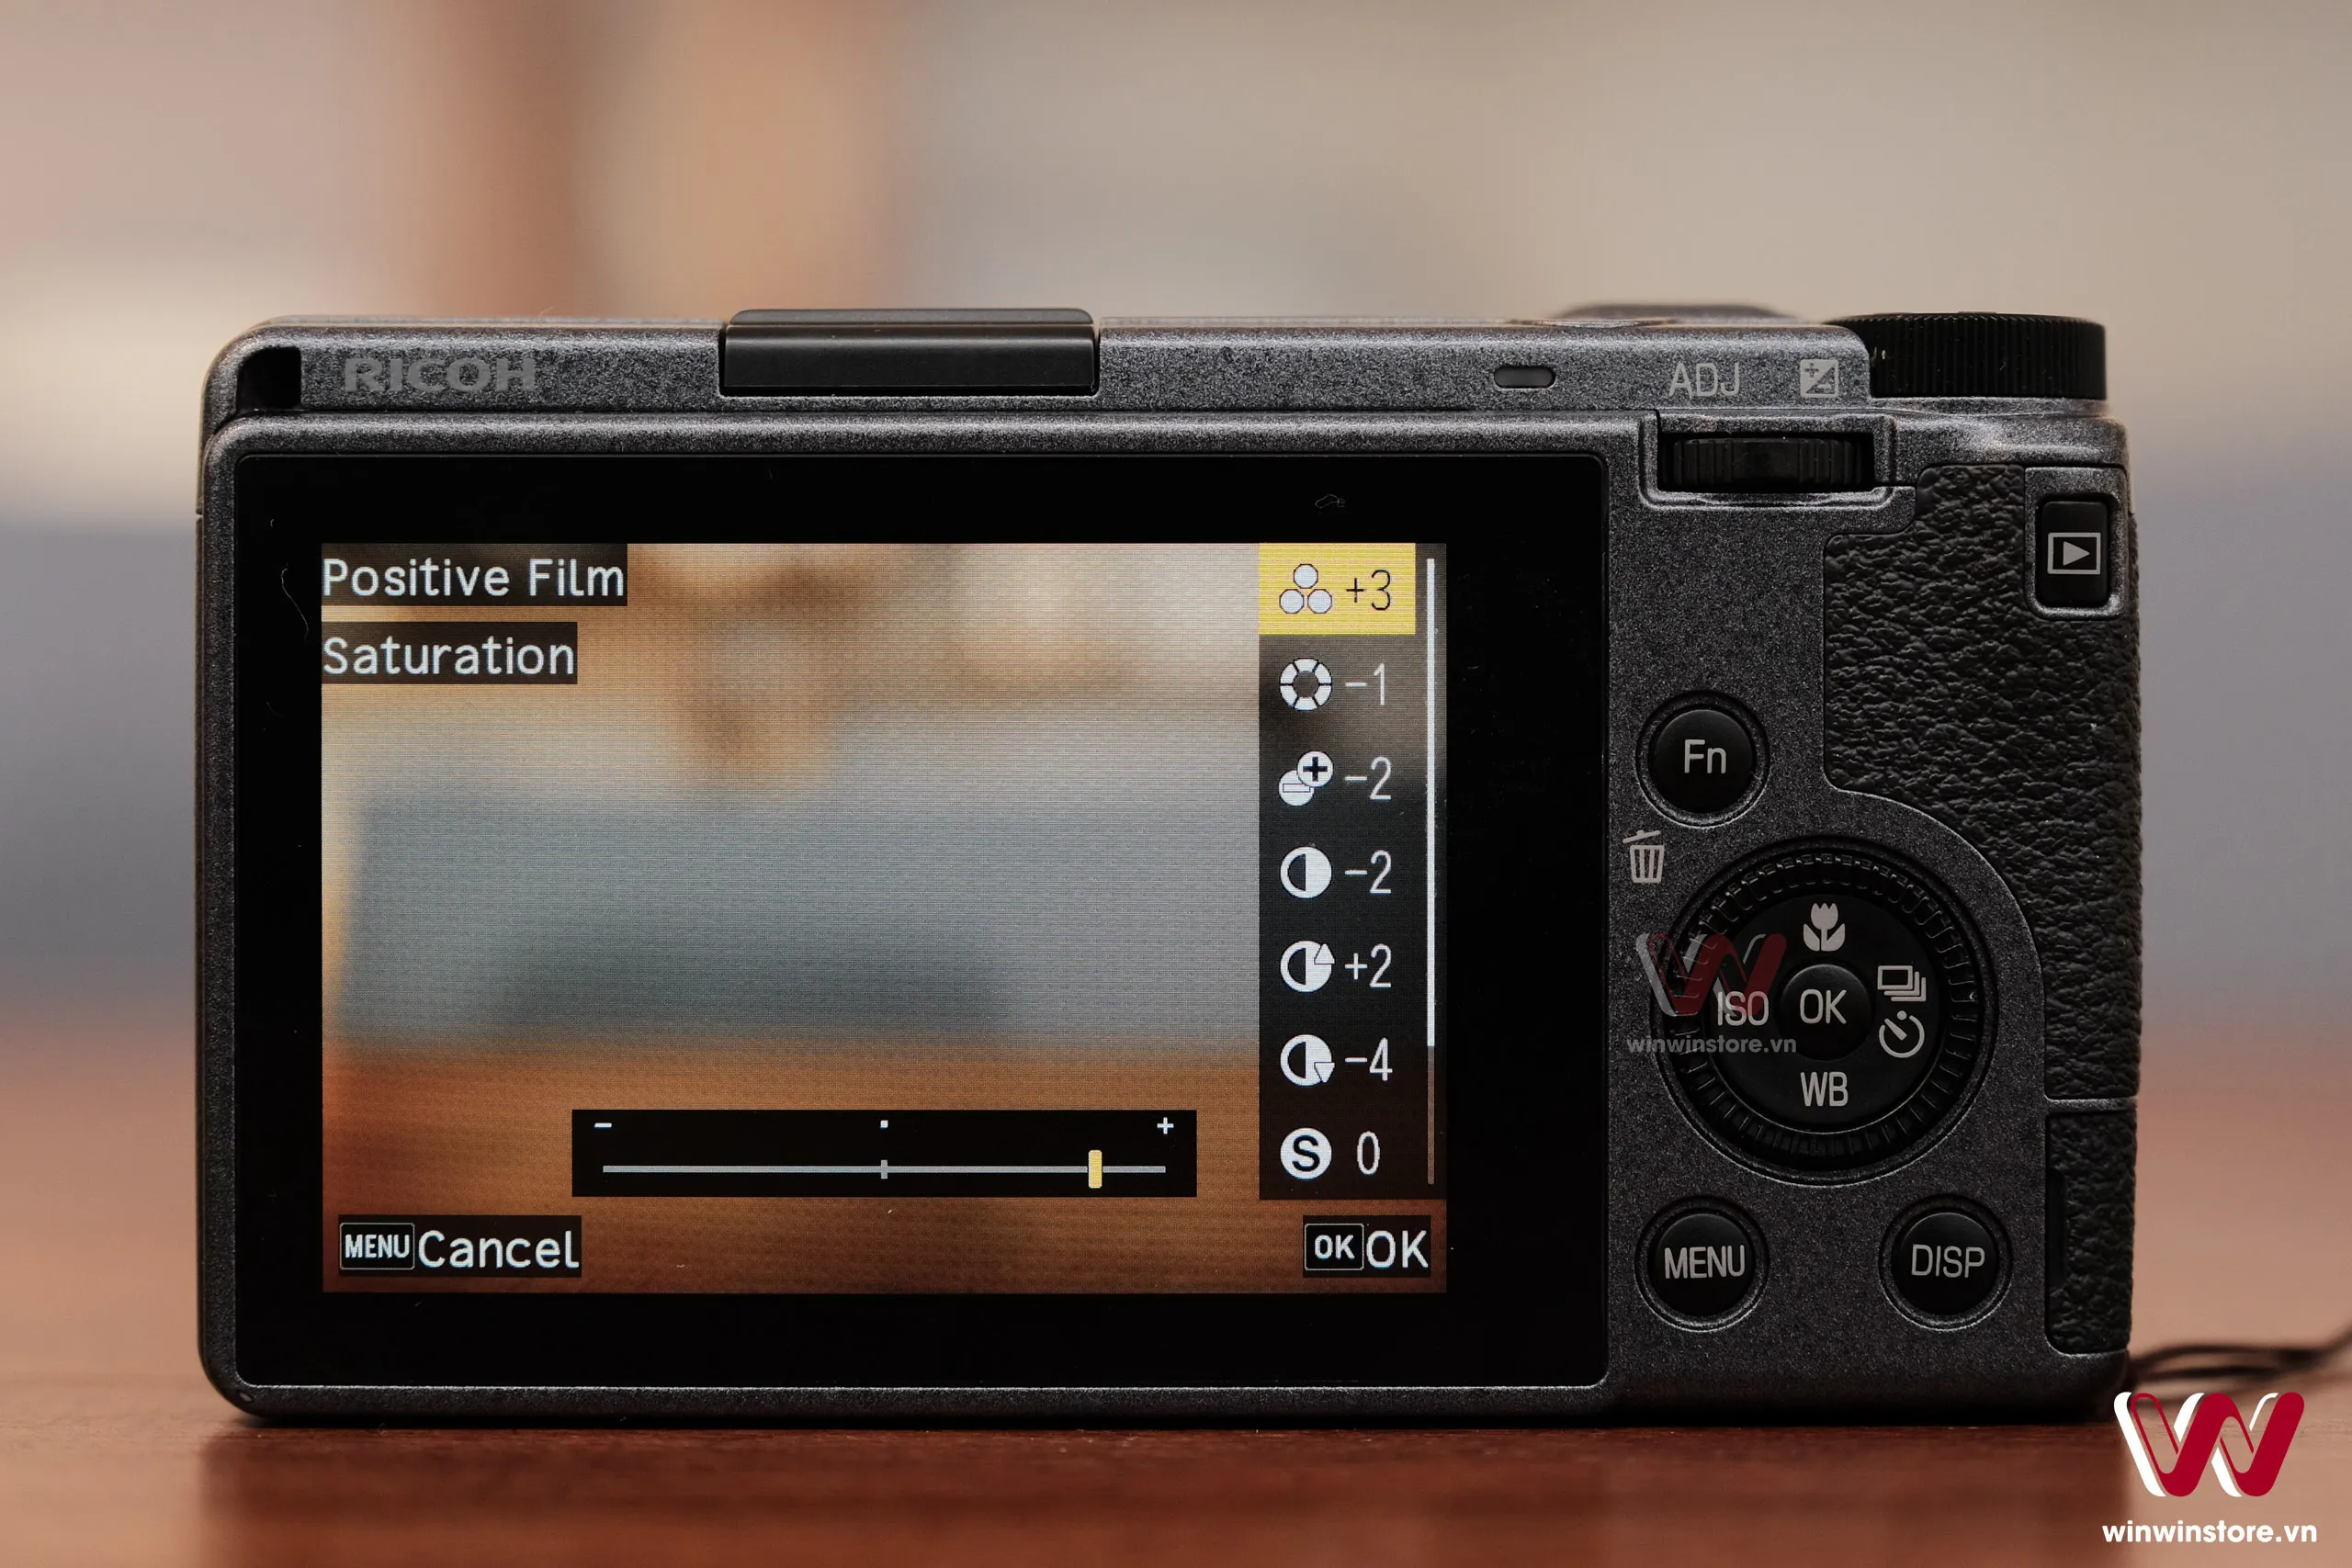 Hướng dẫn chỉnh màu film cho máy ảnh Ricoh GR III/GR IIIx